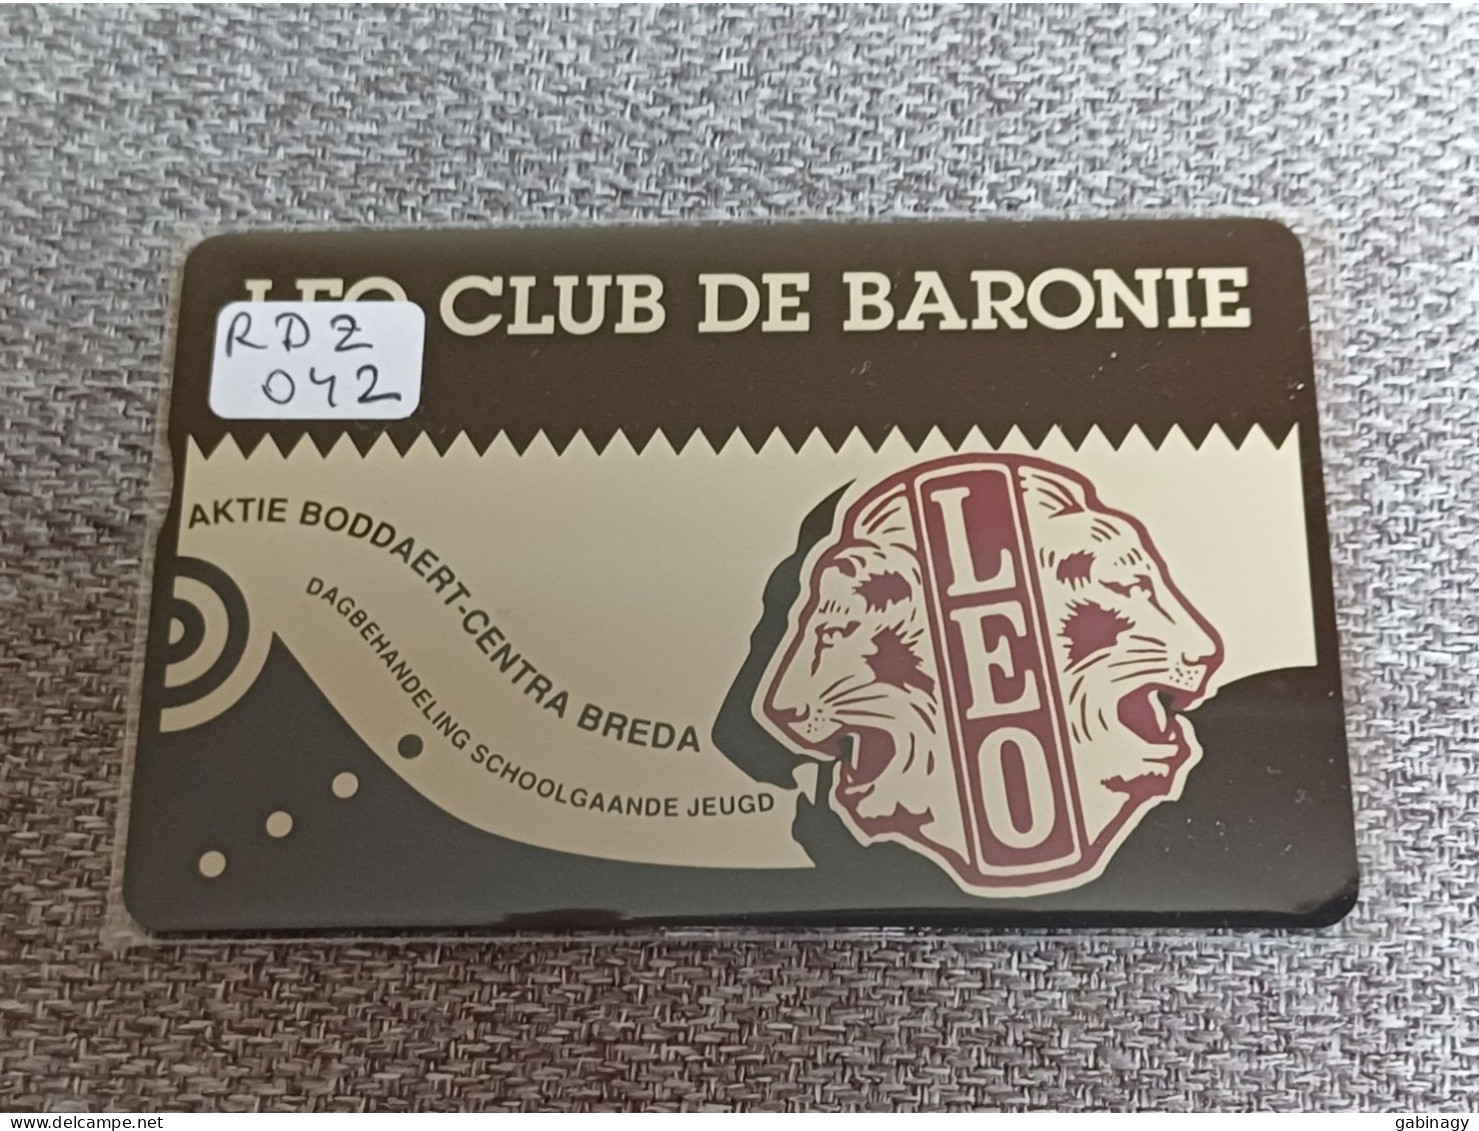 NETHERLANDS - RDZ042 - Leo Club De Baronie - 1.000 EX. - Privées